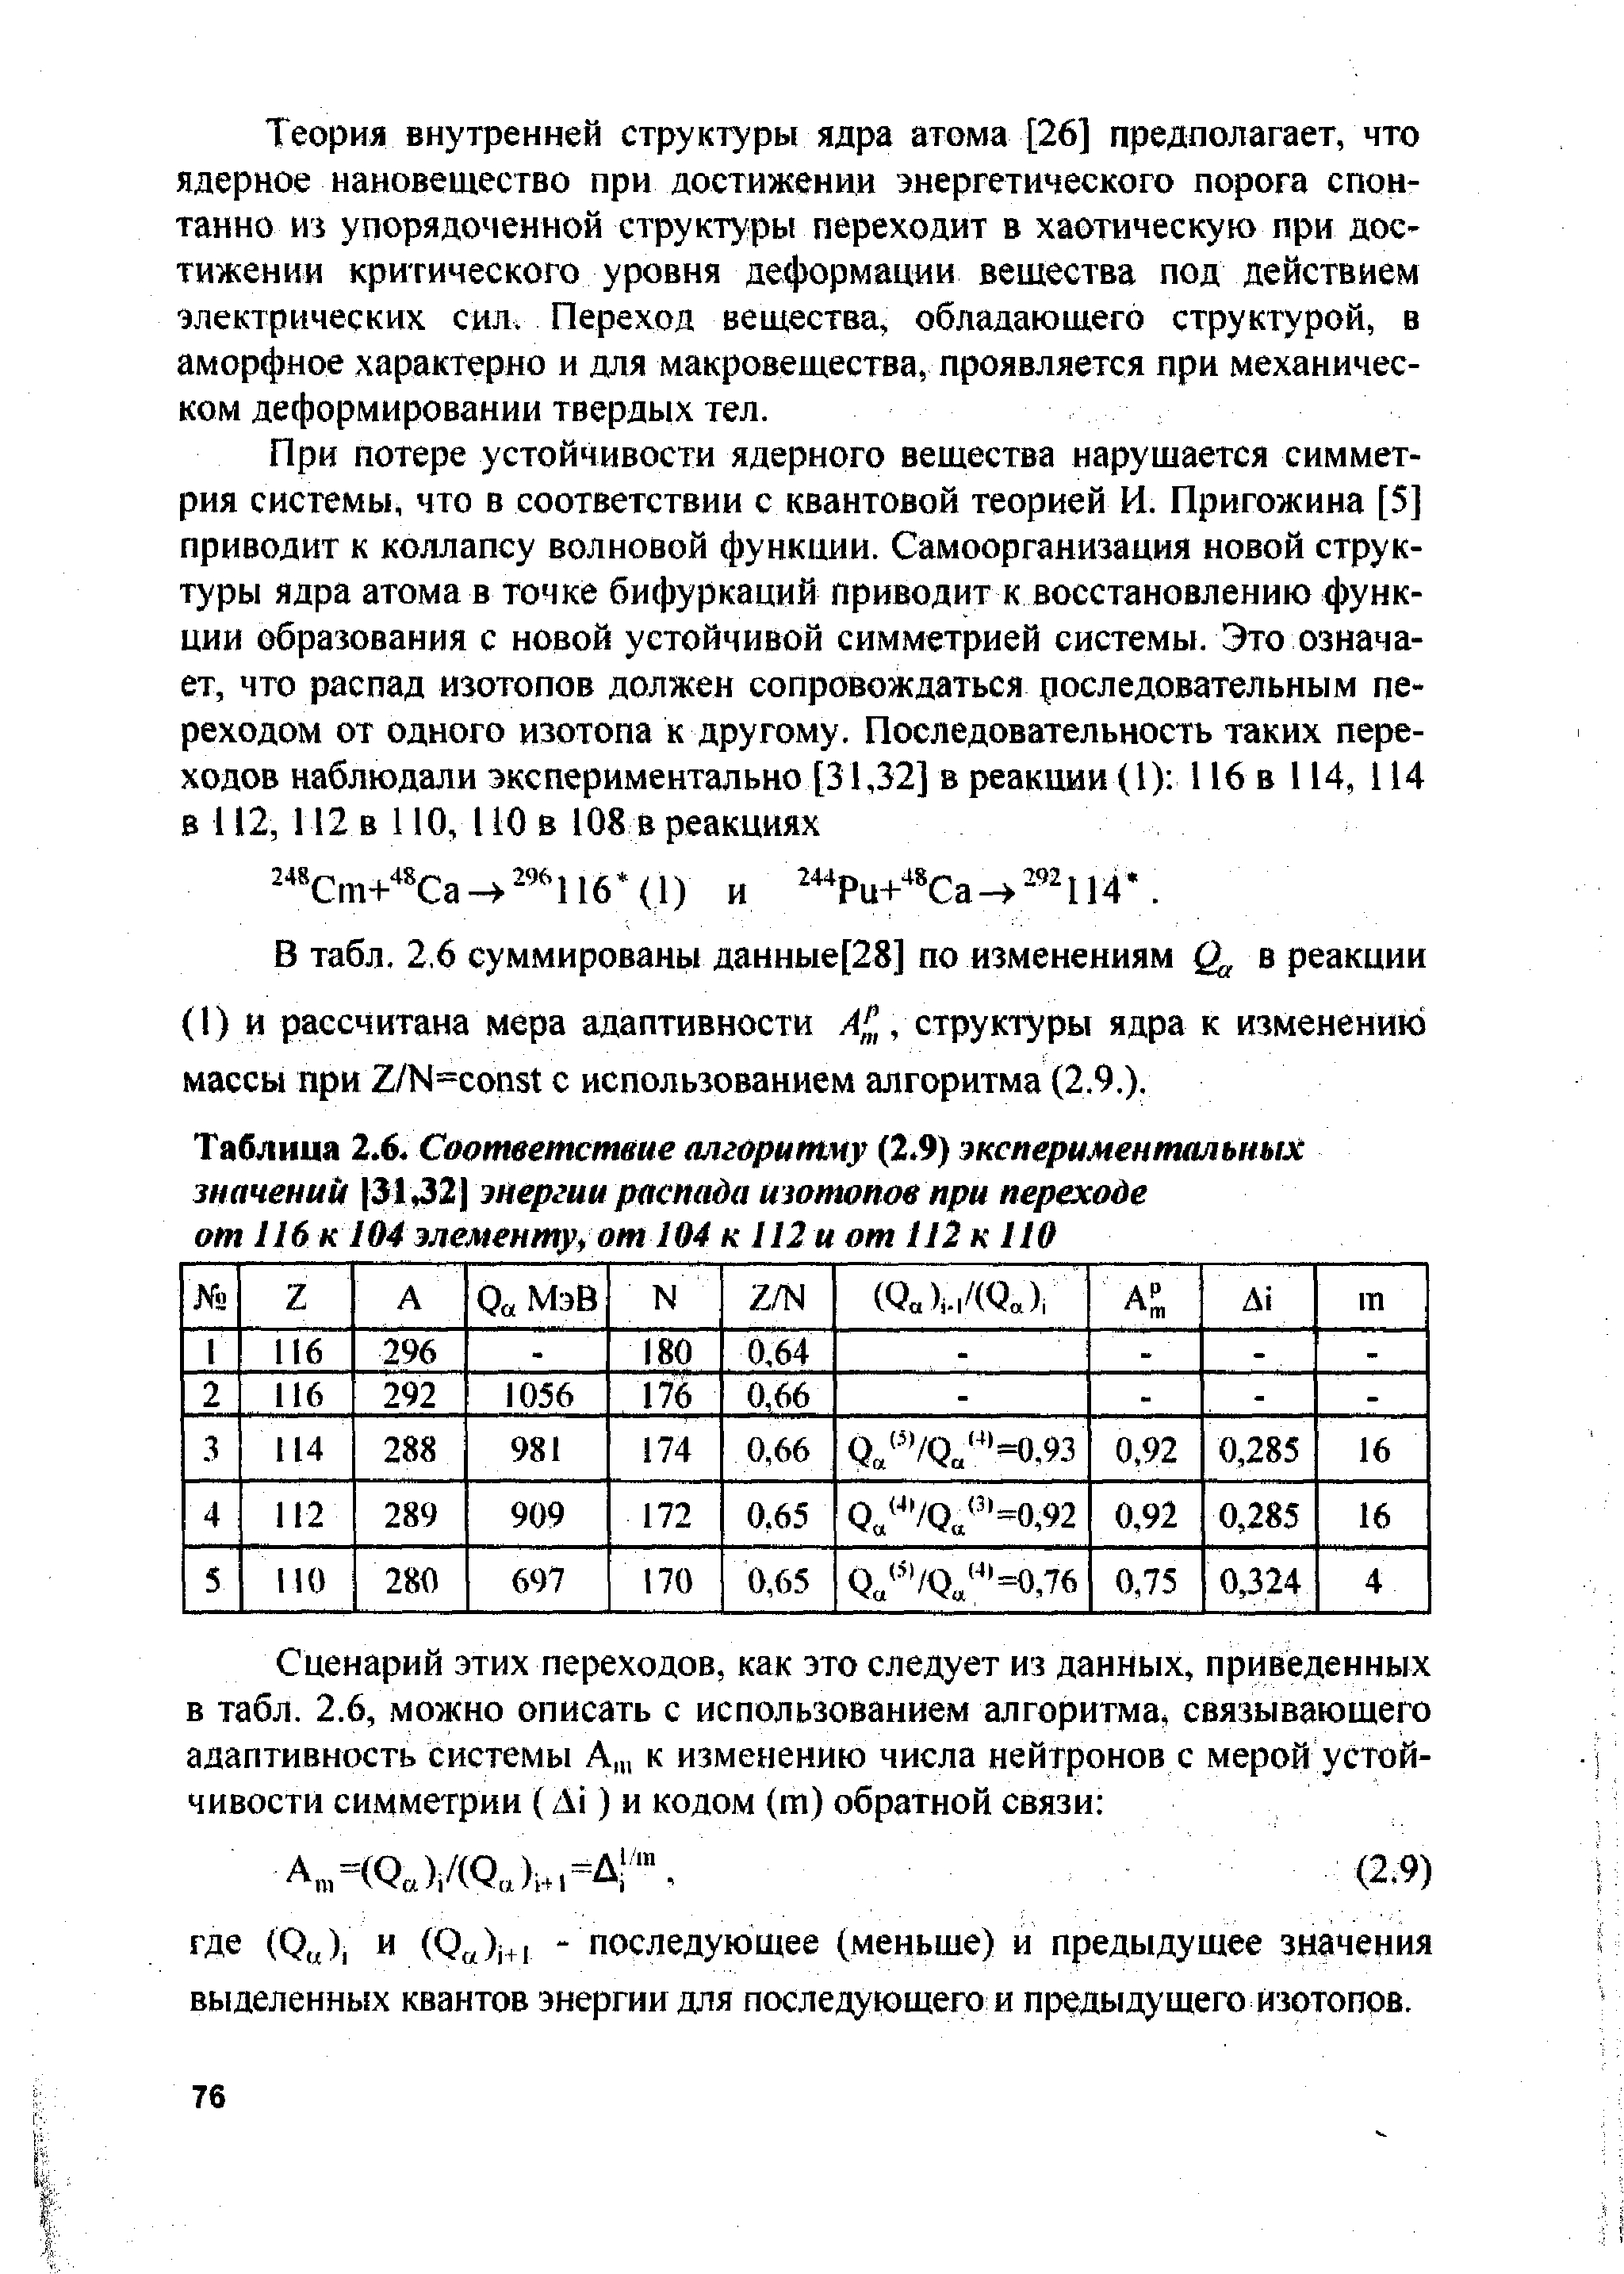 Таблица 2,6. Соответствие алгоритму (2.9) экспериментальных значений 3132] энергии распада изотопов при переходе от 116 к 104 элементу от 104 к 112 и от 112 к 110
